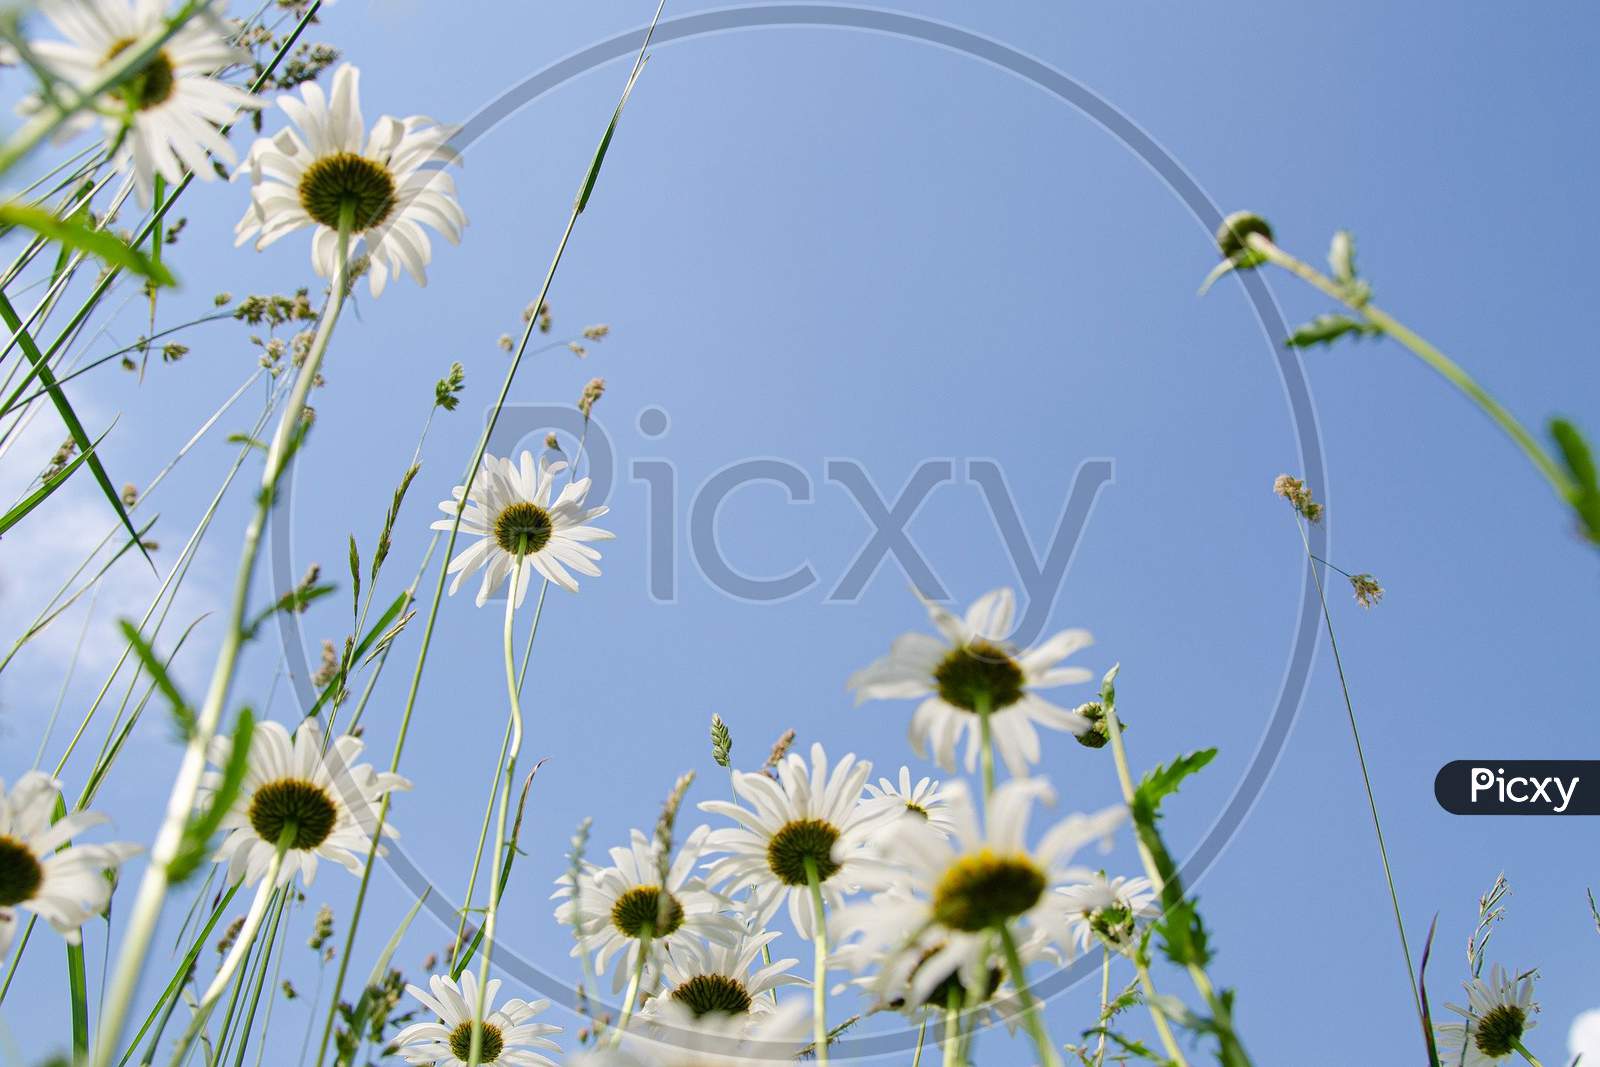 The amazing flowers || sky || wildflower